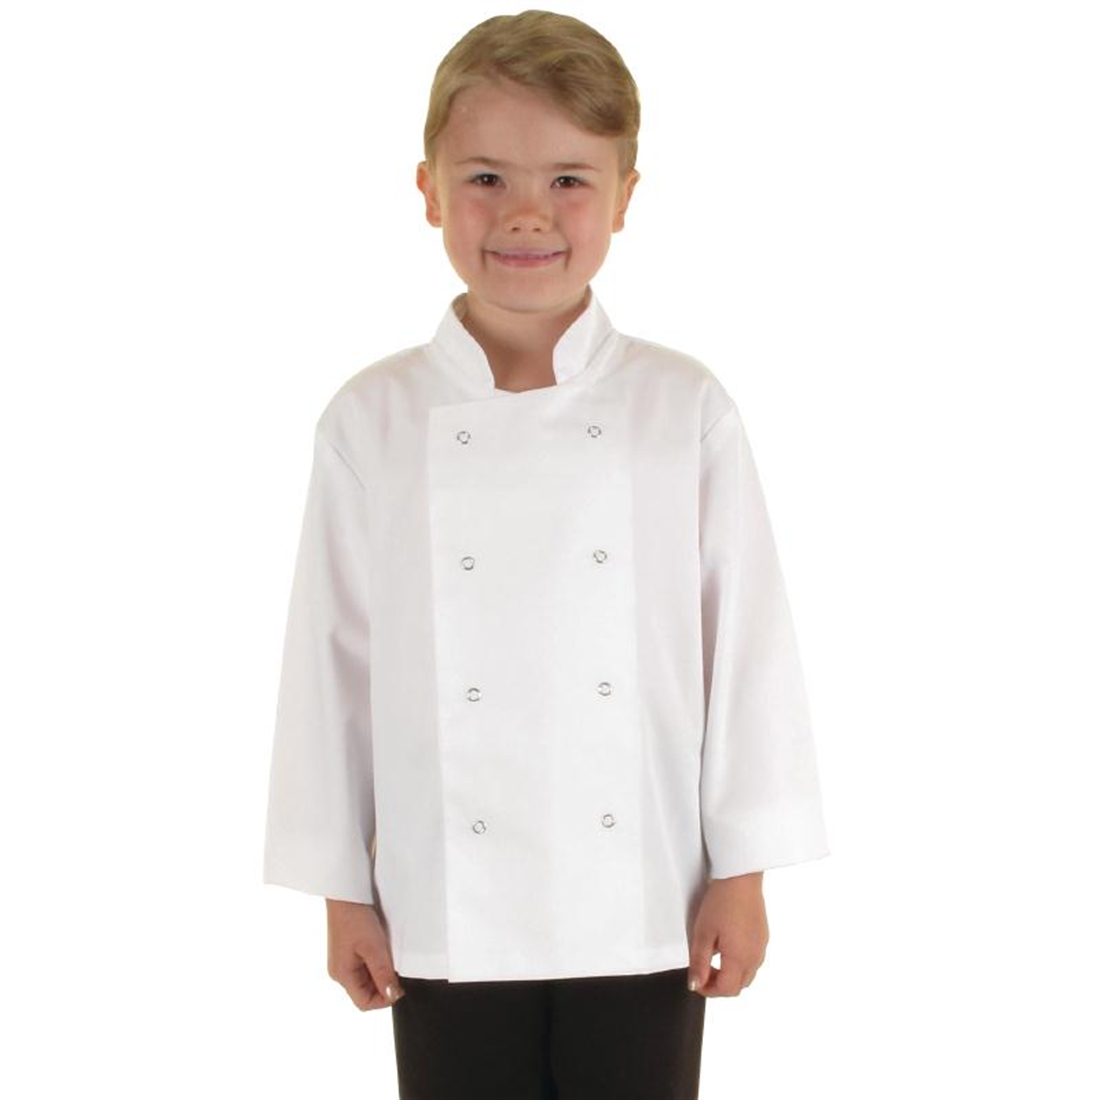 Whites Childrens Chef Jacket White L